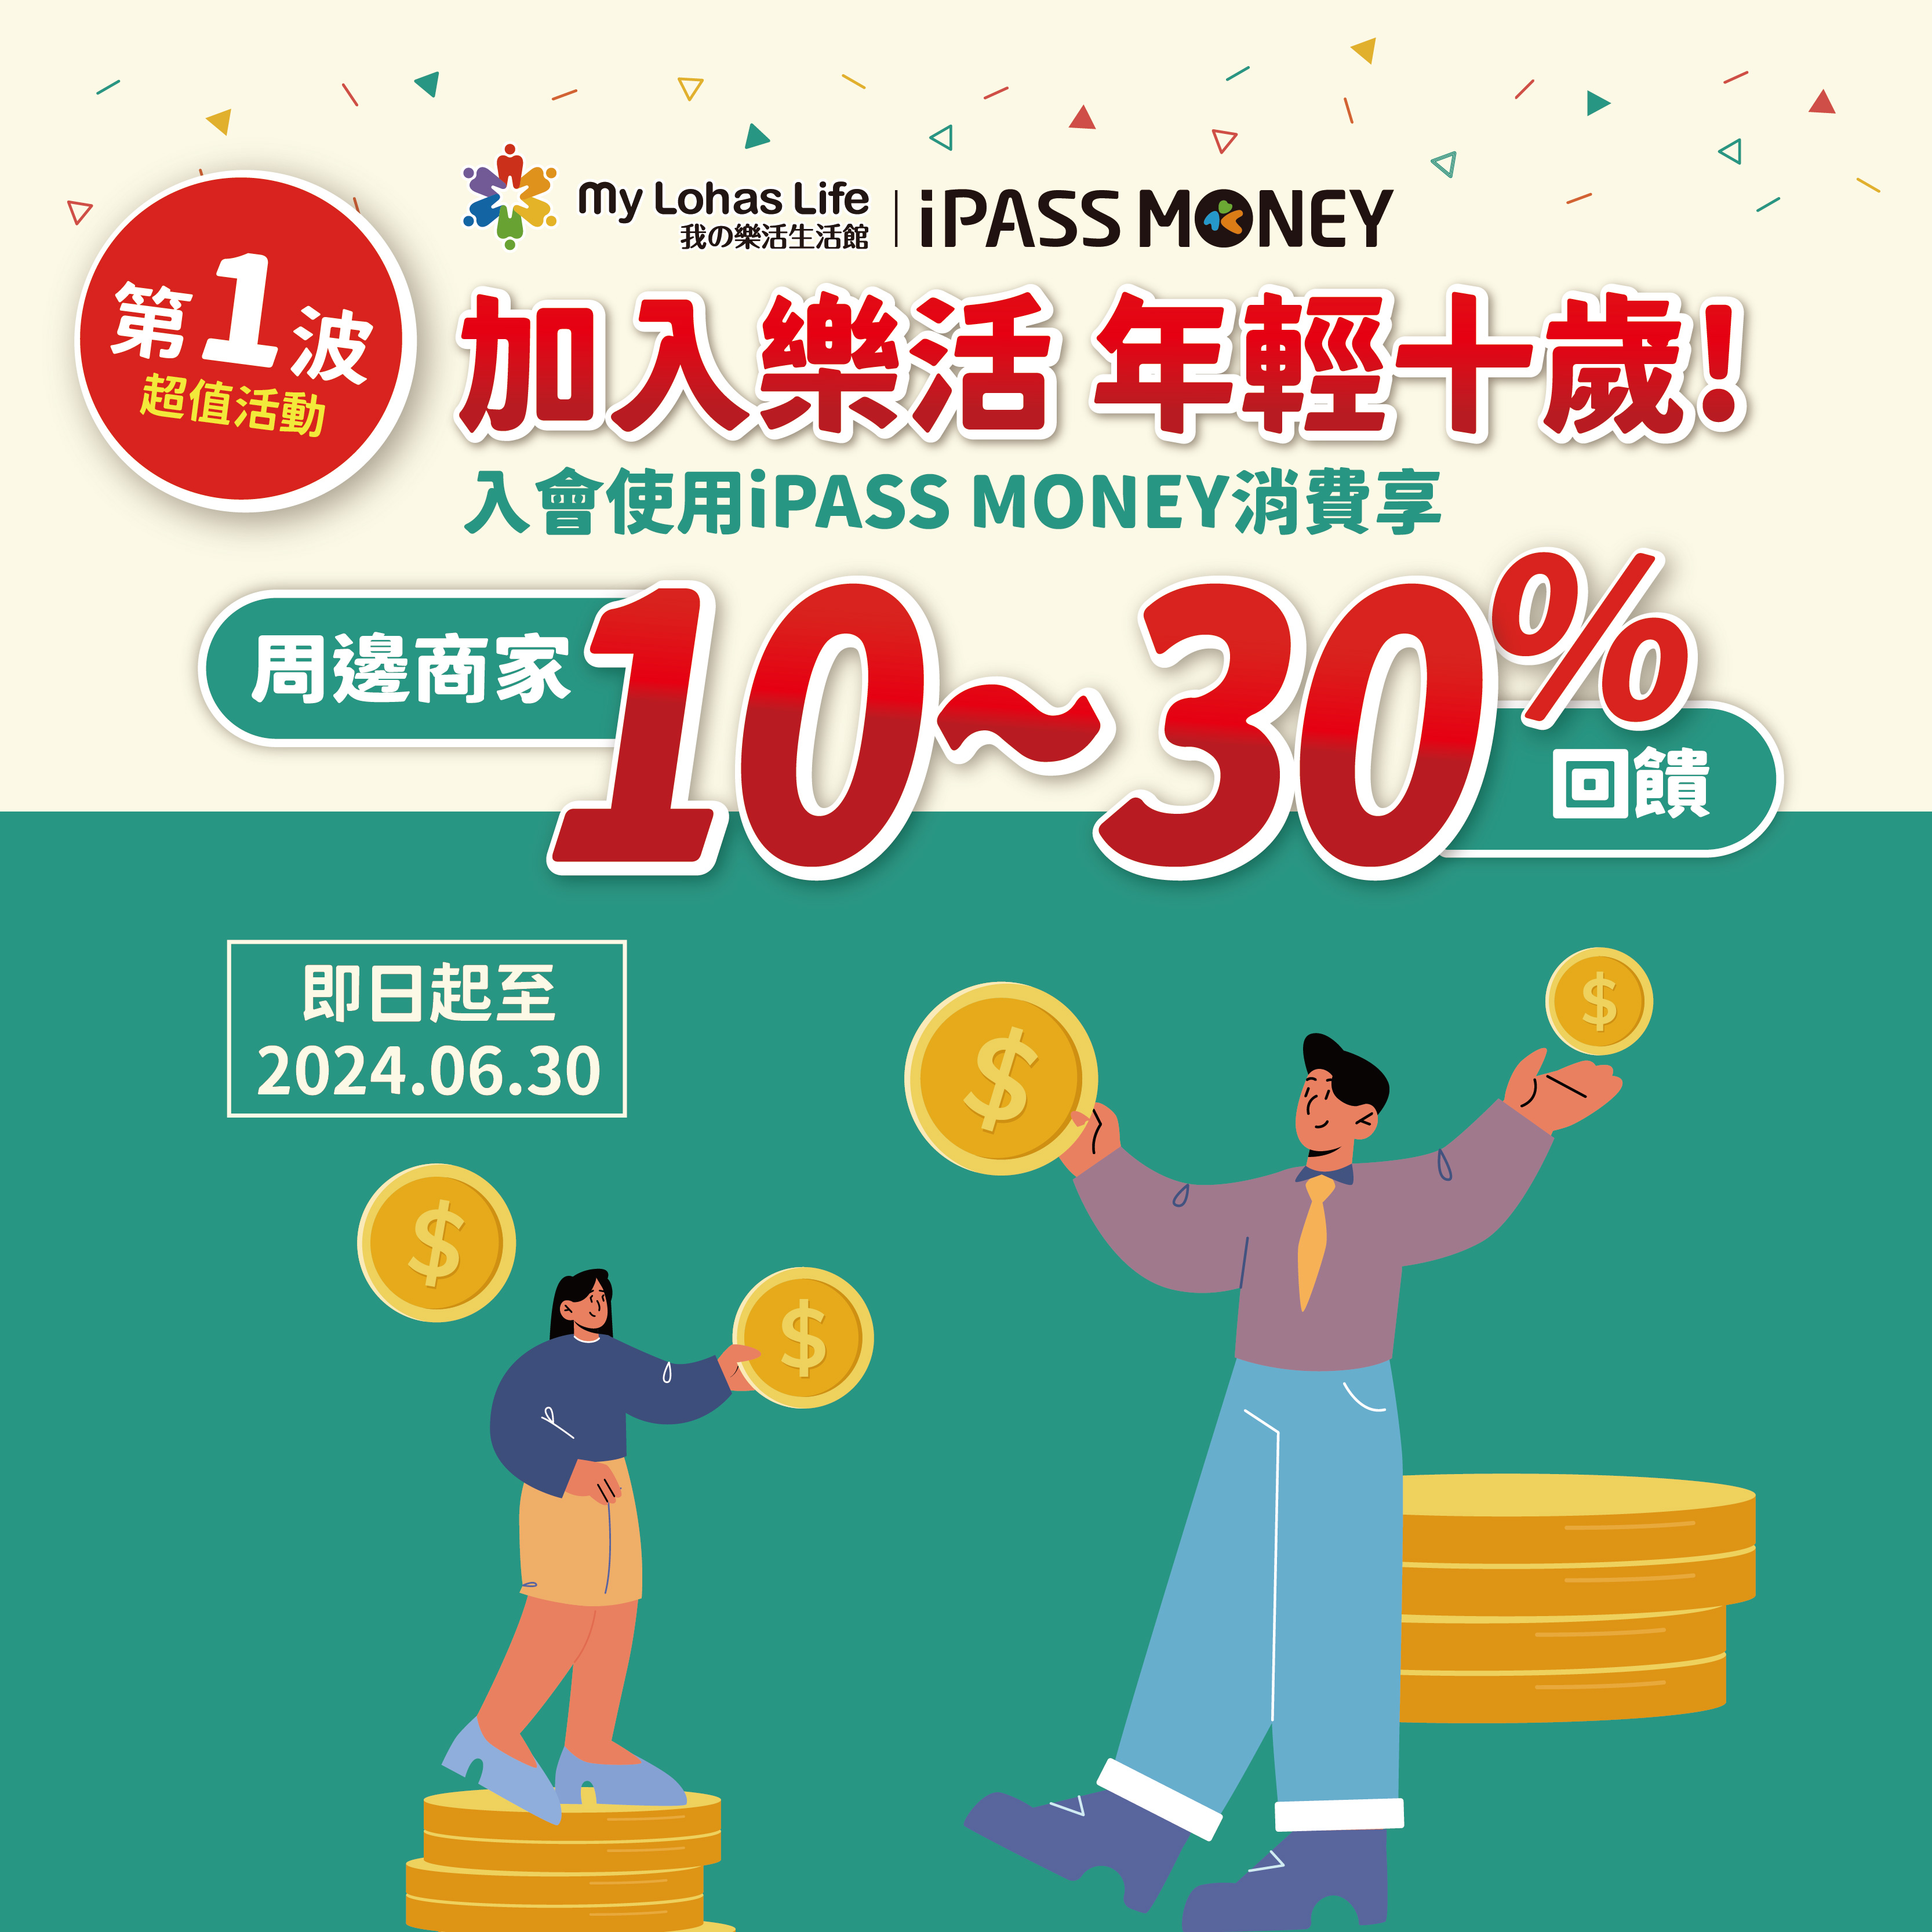 【樂活會員專屬優惠】指定店家使用 iPASS MONEY 消費，「我的樂活生活館」會員最高享 30% 回饋